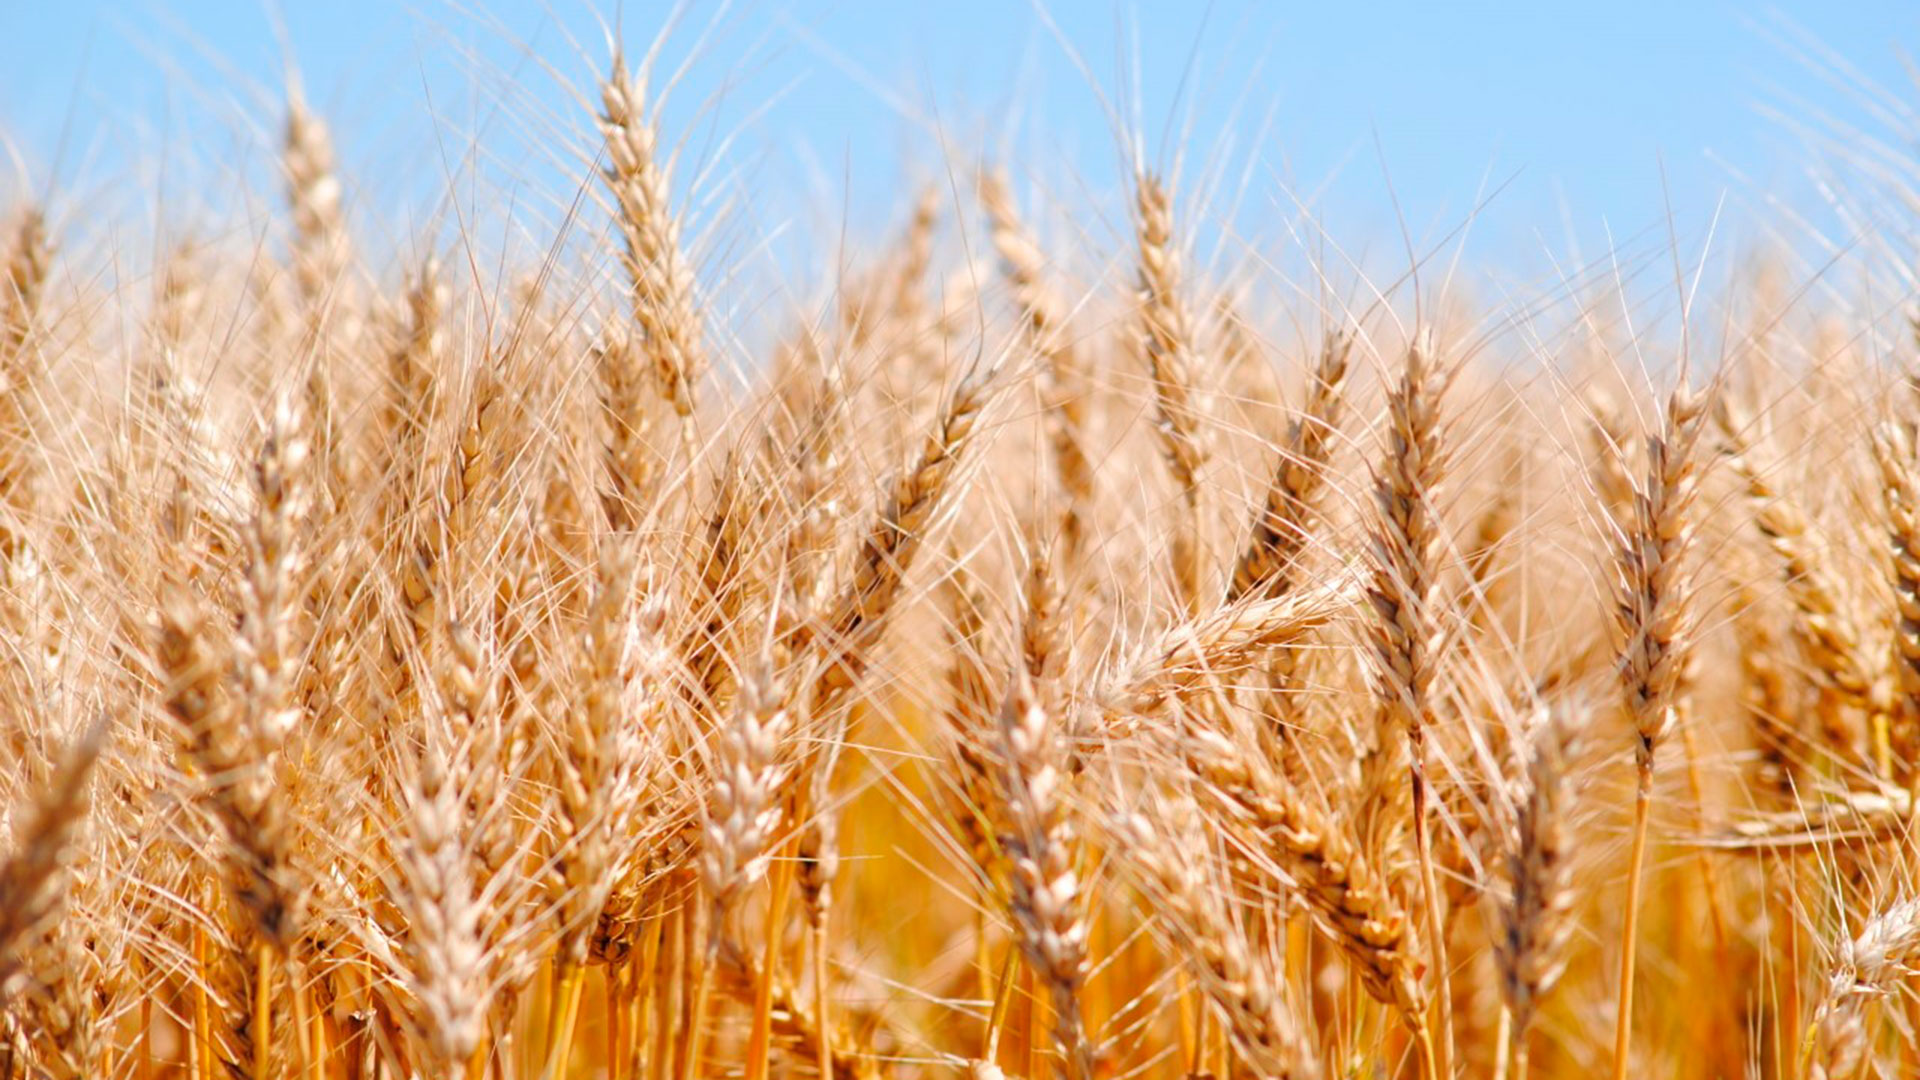 El trigo fue uno de los cultivos más afectados por las condiciones climáticas adversas